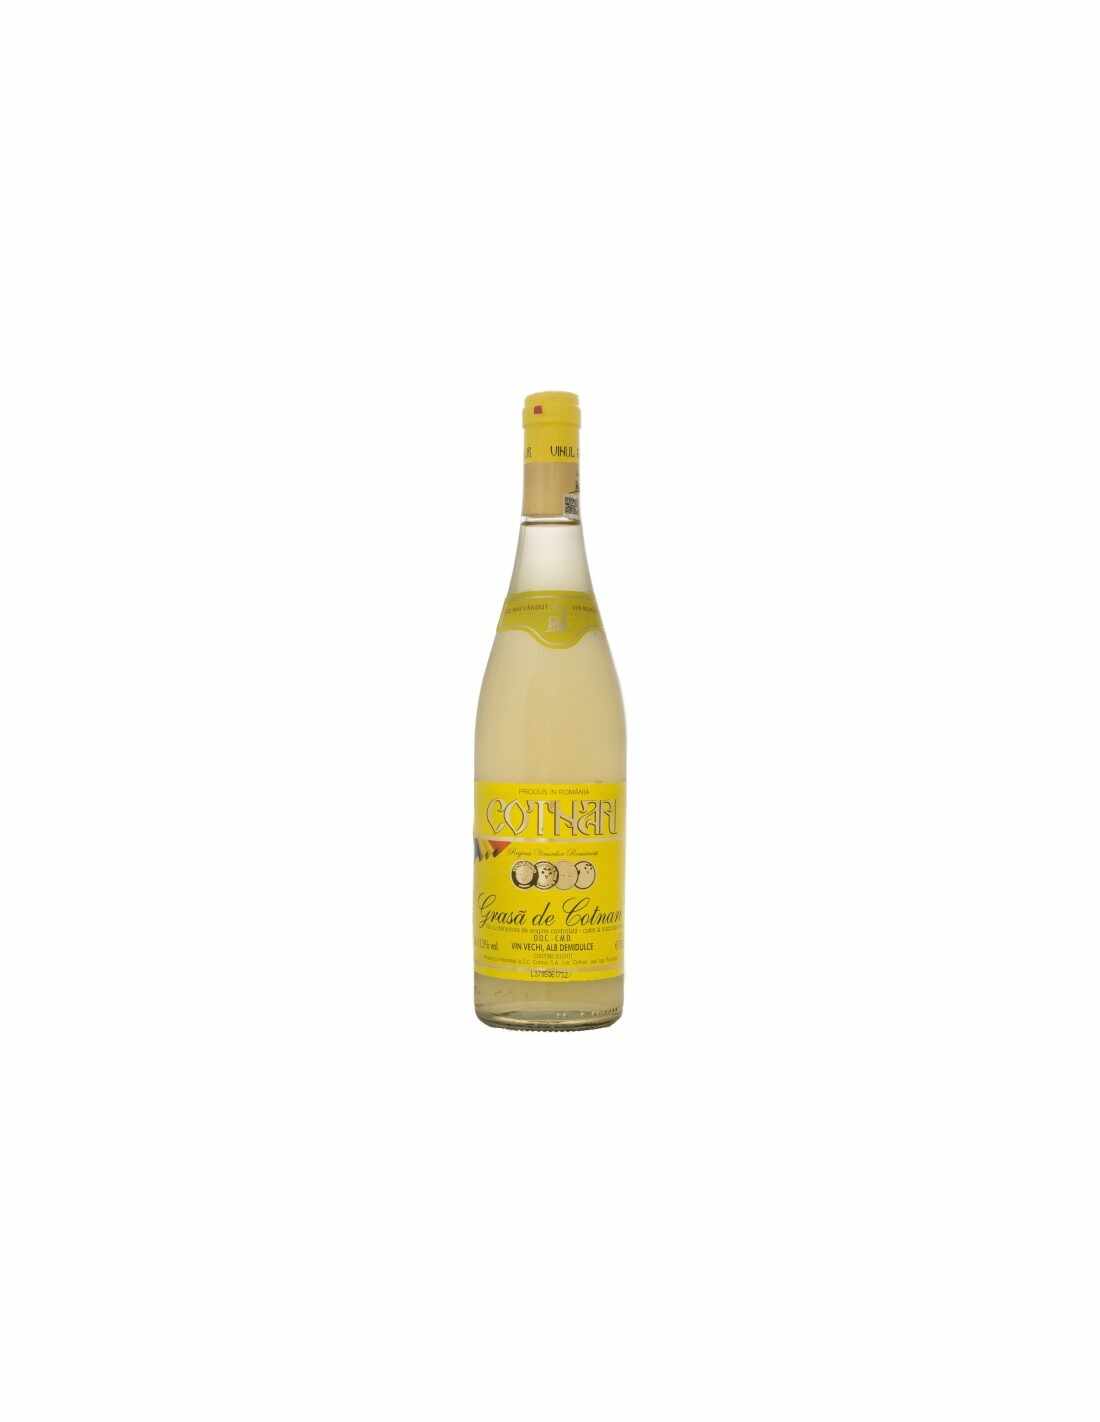 Vin alb demidulce, Grasa de Cotnari, 0.75L, 11.5% alc., Romania